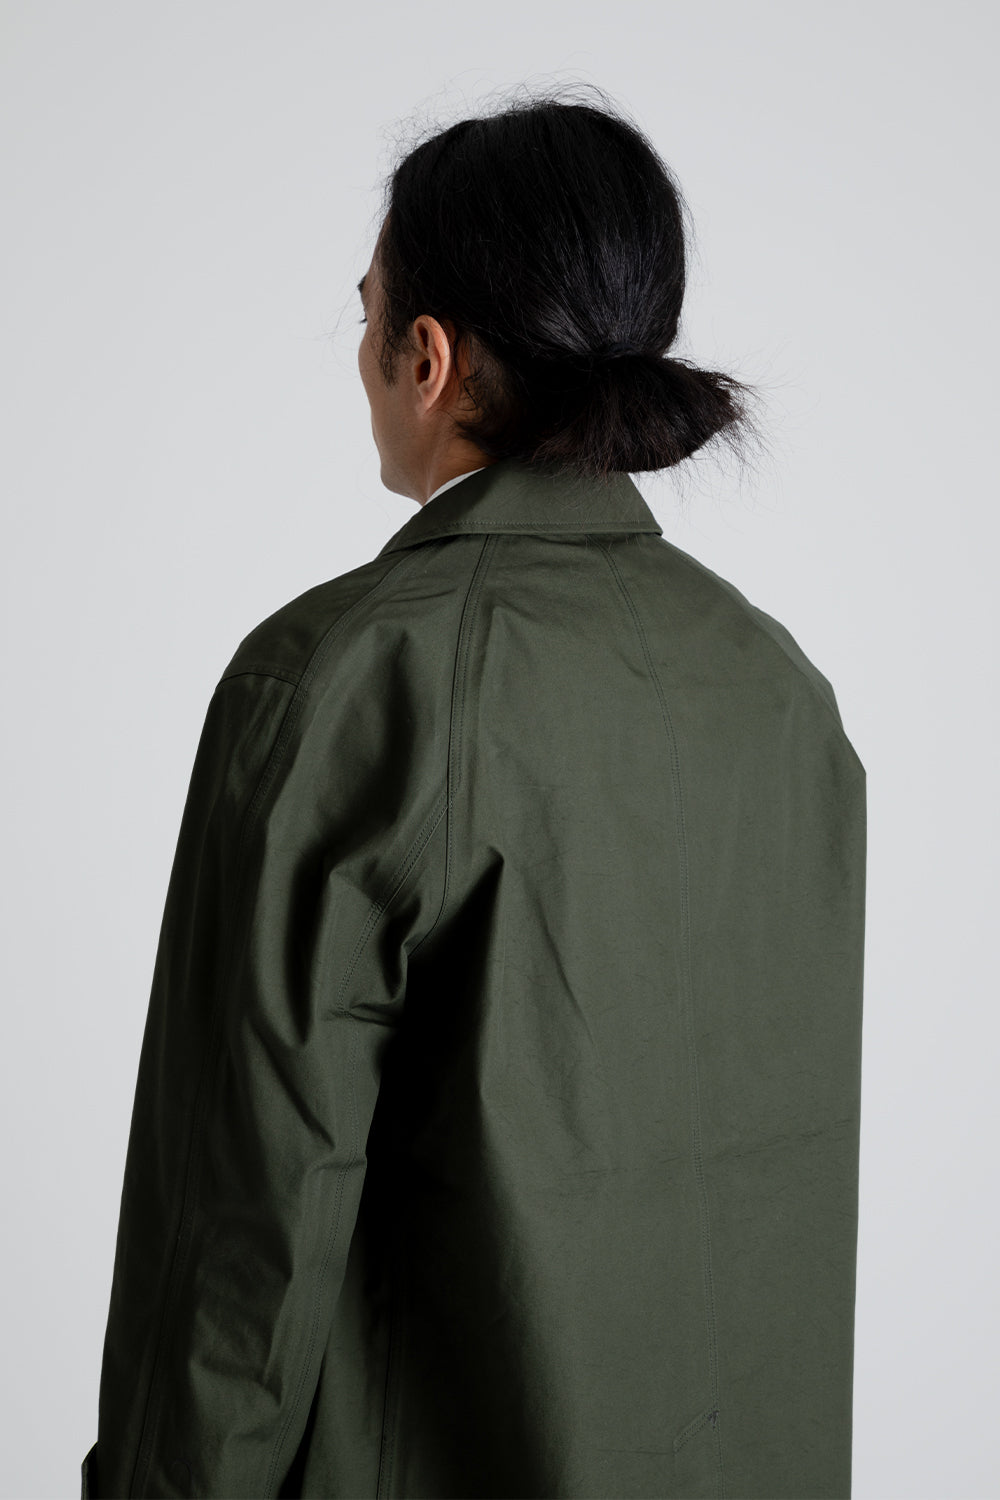 Nanamica GORE-TEX Soutien Collar Coat in Moss Green